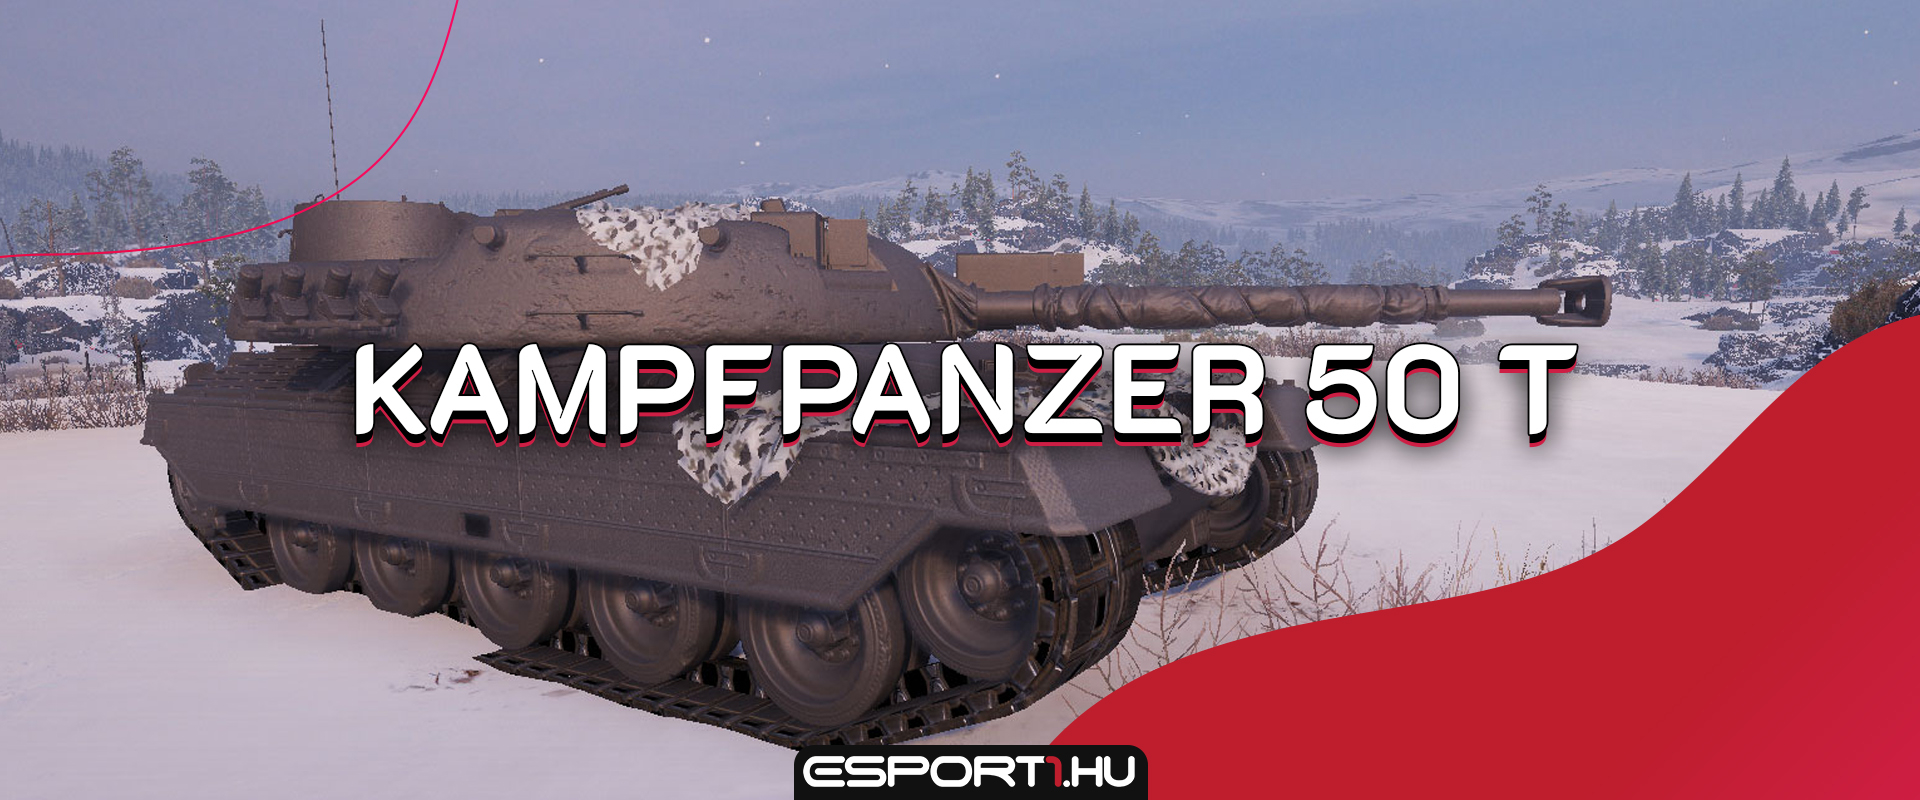 Kampfpanzer 50 t - Futurisztikus tier IX-es közepes tank a szuperteszten